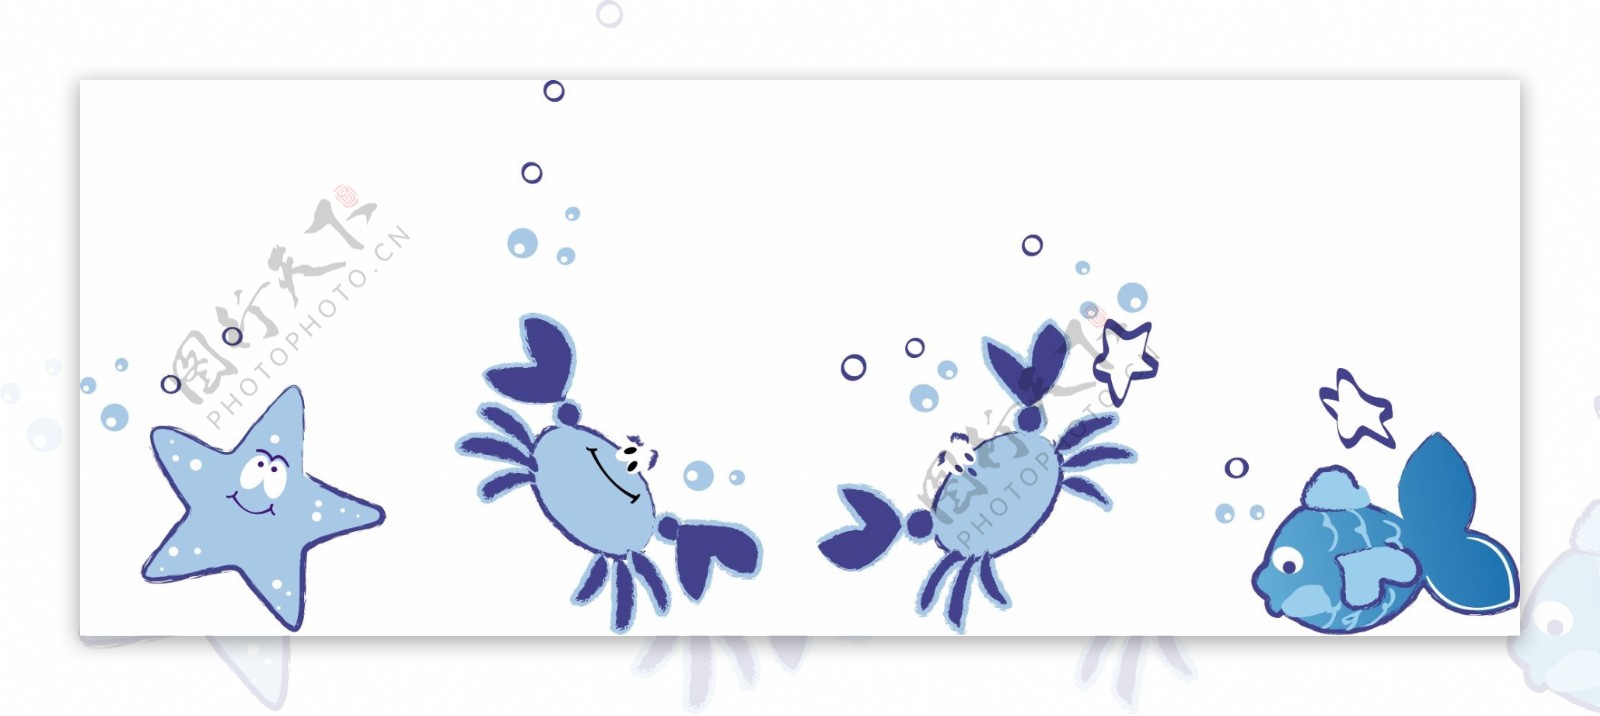 印花矢量图动物小鱼螃蟹星星免费素材